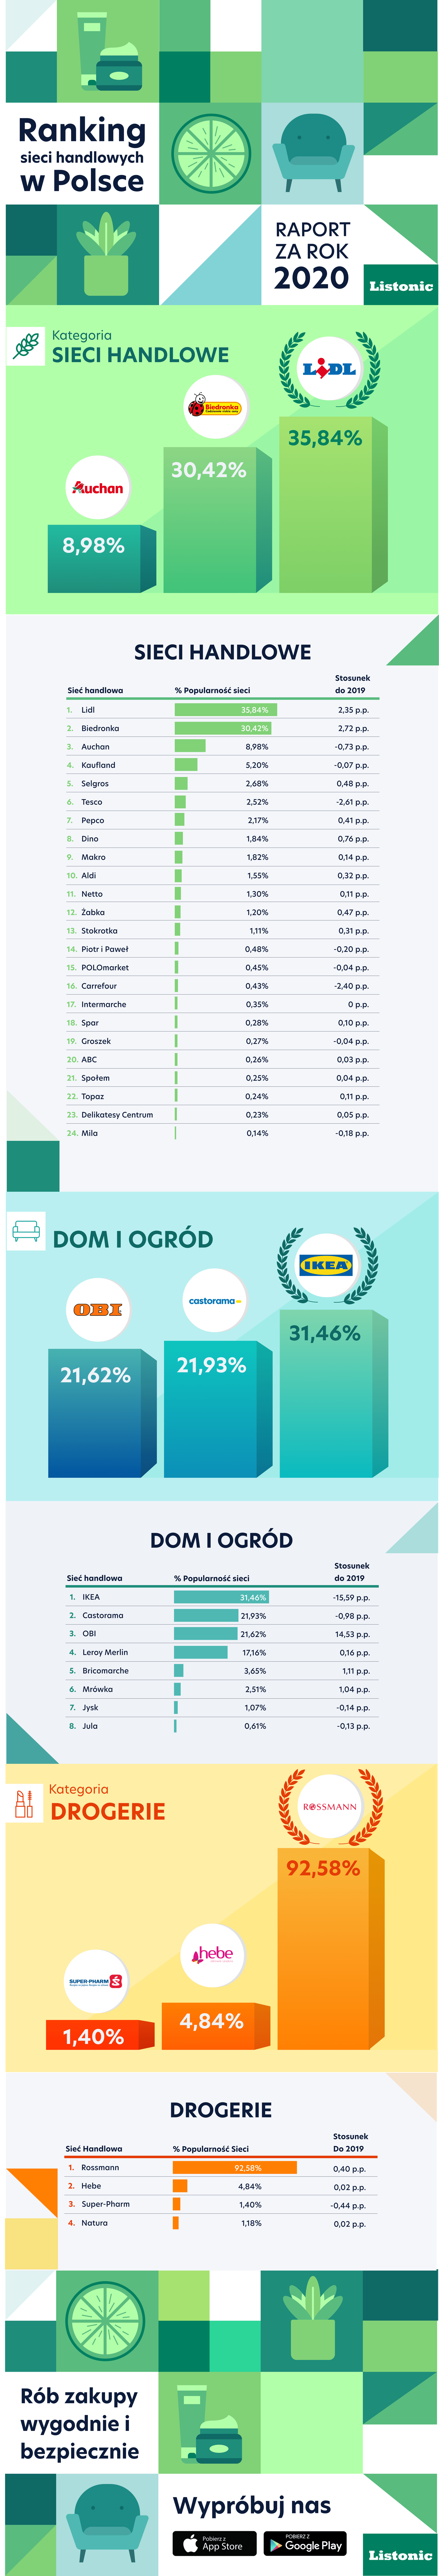 Które marki Polacy wybierali najczęściej w 2020 roku? [RAPORT] Auchan Listonic Ranking sieci handlowych w Polsce Infografika